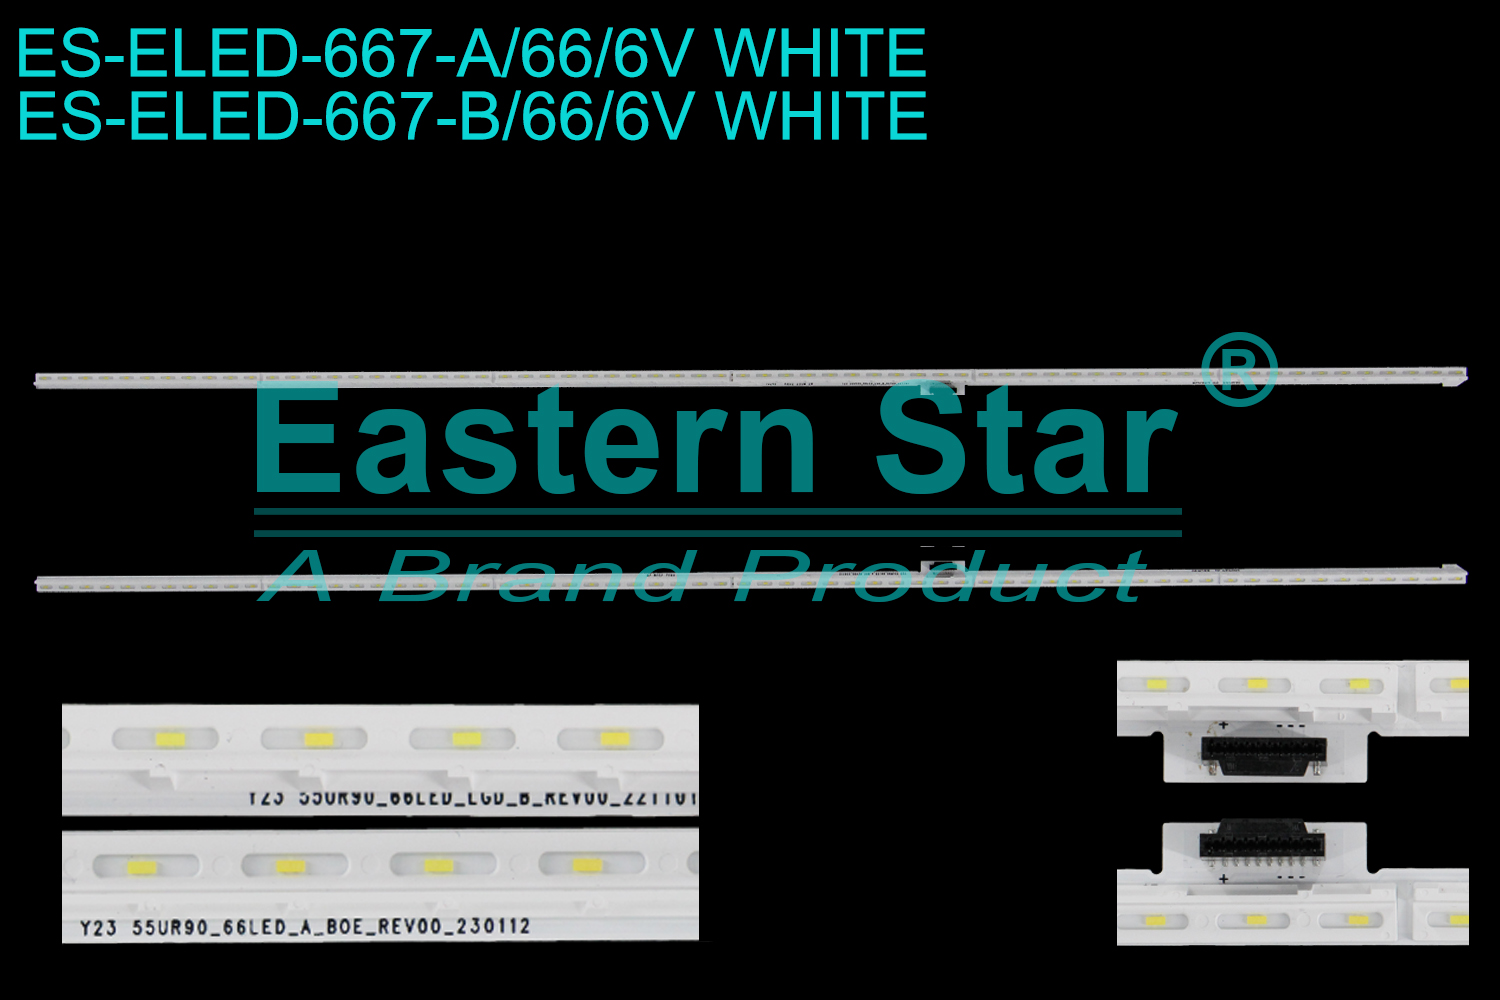 ES-ELED-667 ELED/EDGE TV backlight use for 55'' Lg A: 10341 Y23 55UR90_66LED_A_BO_REV00_230112 R802 25UM 2W CN0424 A1 55UR90  B: 10249 Y23 55UR90_66LED_LGD_B_REV00_221101 R802 25UM 2W BM0924 A2 55UR90 LED STRIPS(/)